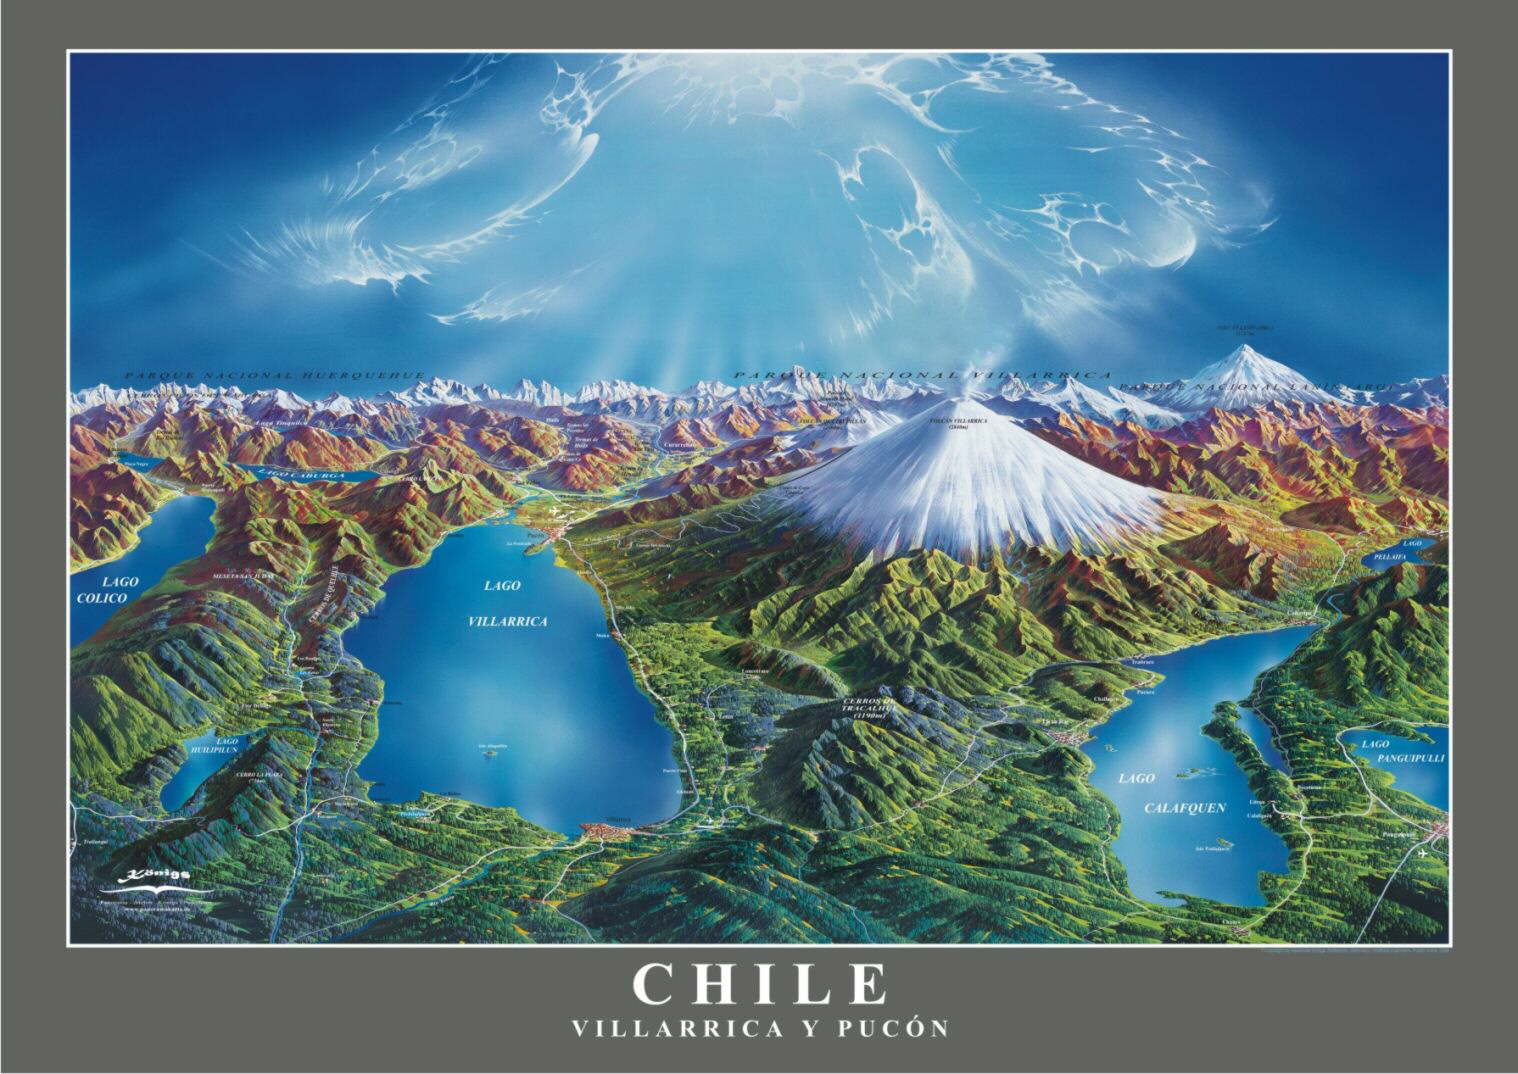 Villarrica, Chile